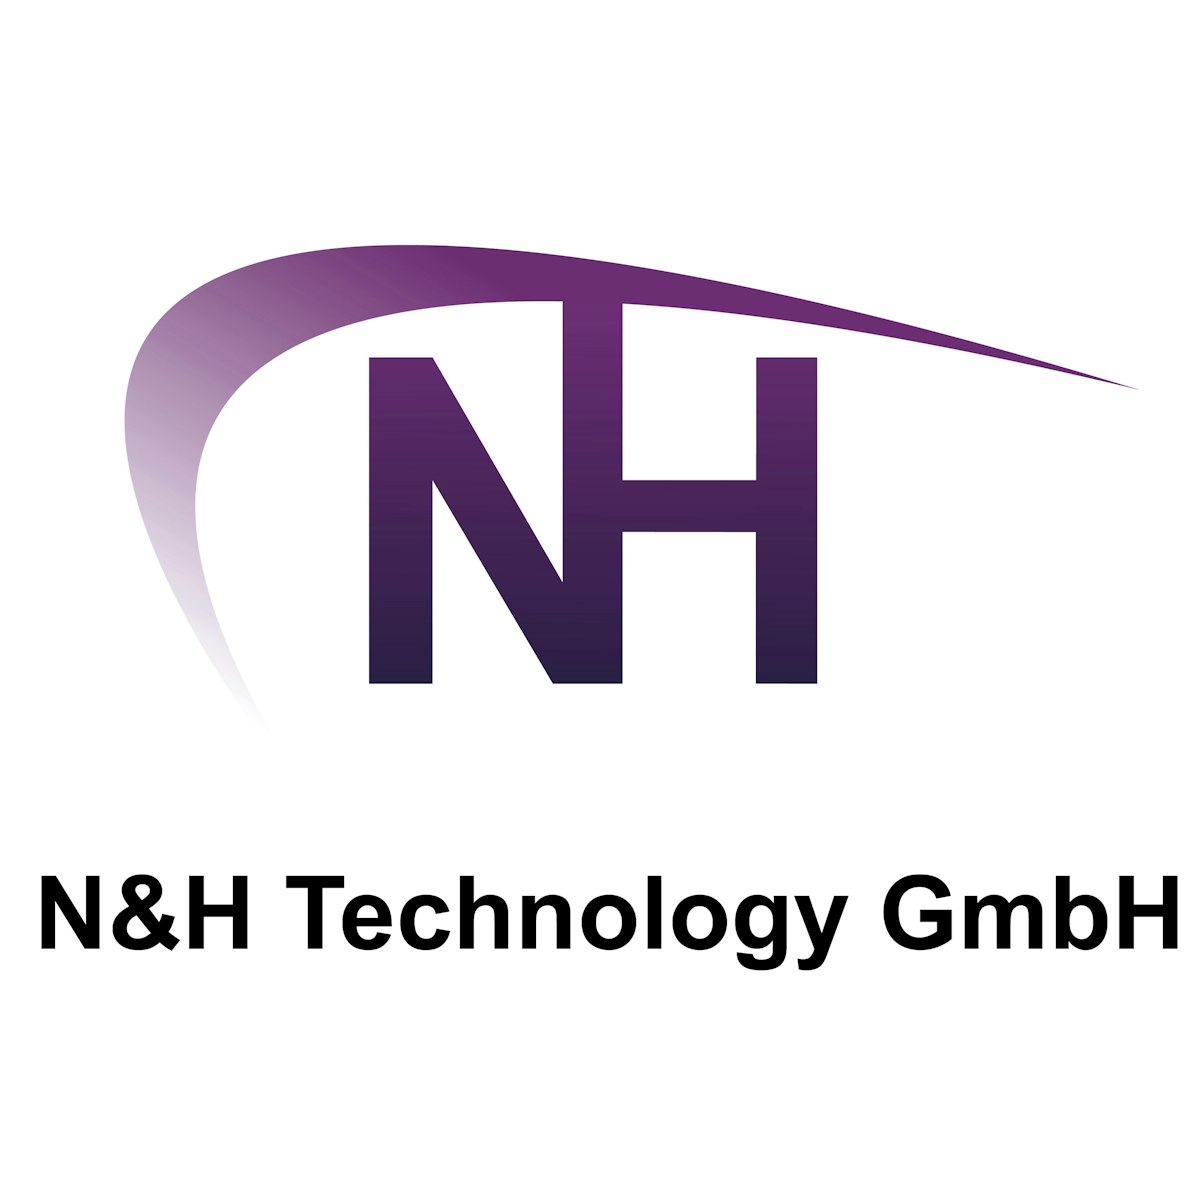 Tastaturen Hersteller N&H Technology GmbH